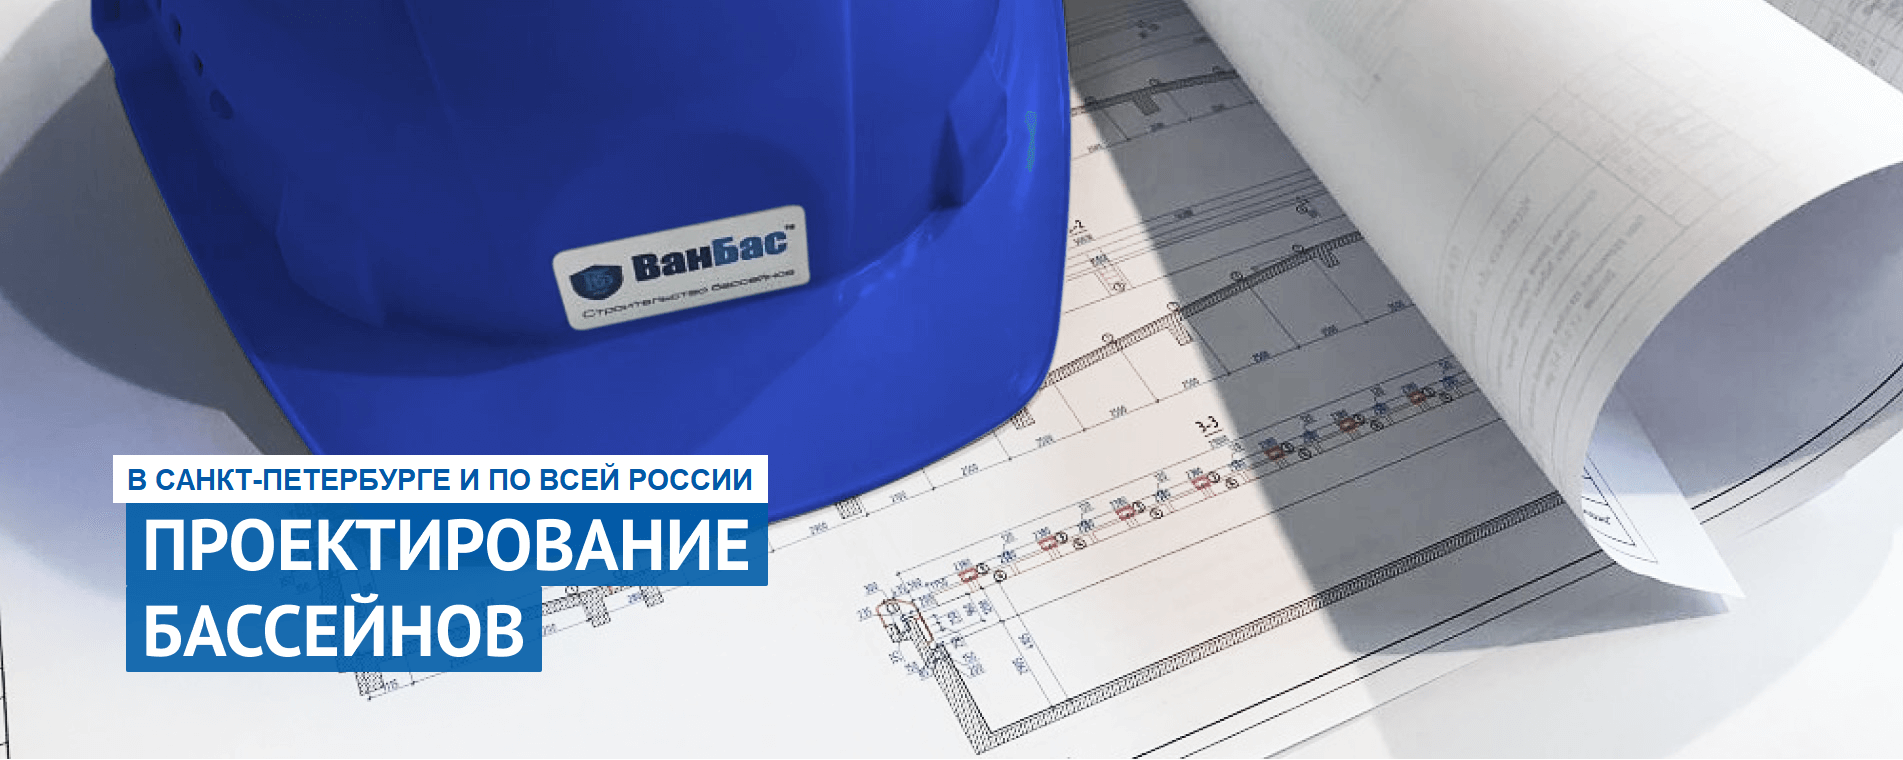 slide_one_2 Строительство бассейнов под ключ в СПб | ВанБас